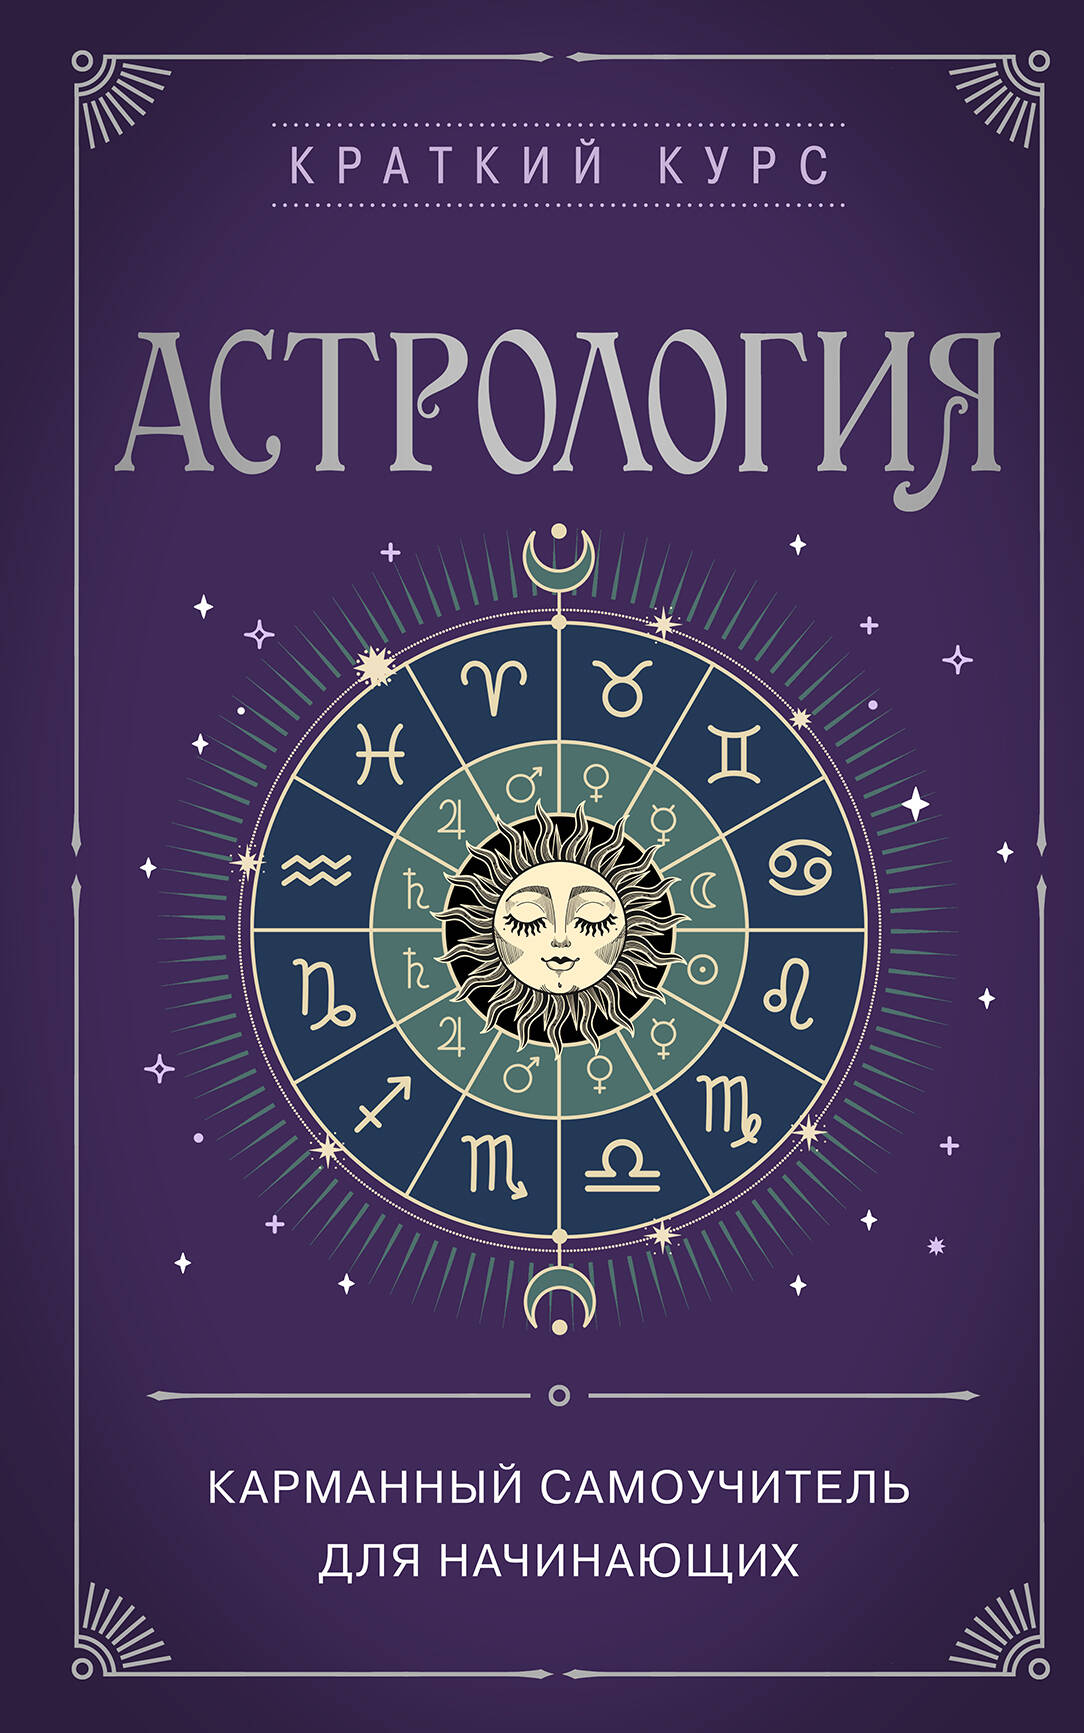 Астрология. Карманный самоучитель для начинающих литература эксмо астрология карманный самоучитель для начинающих